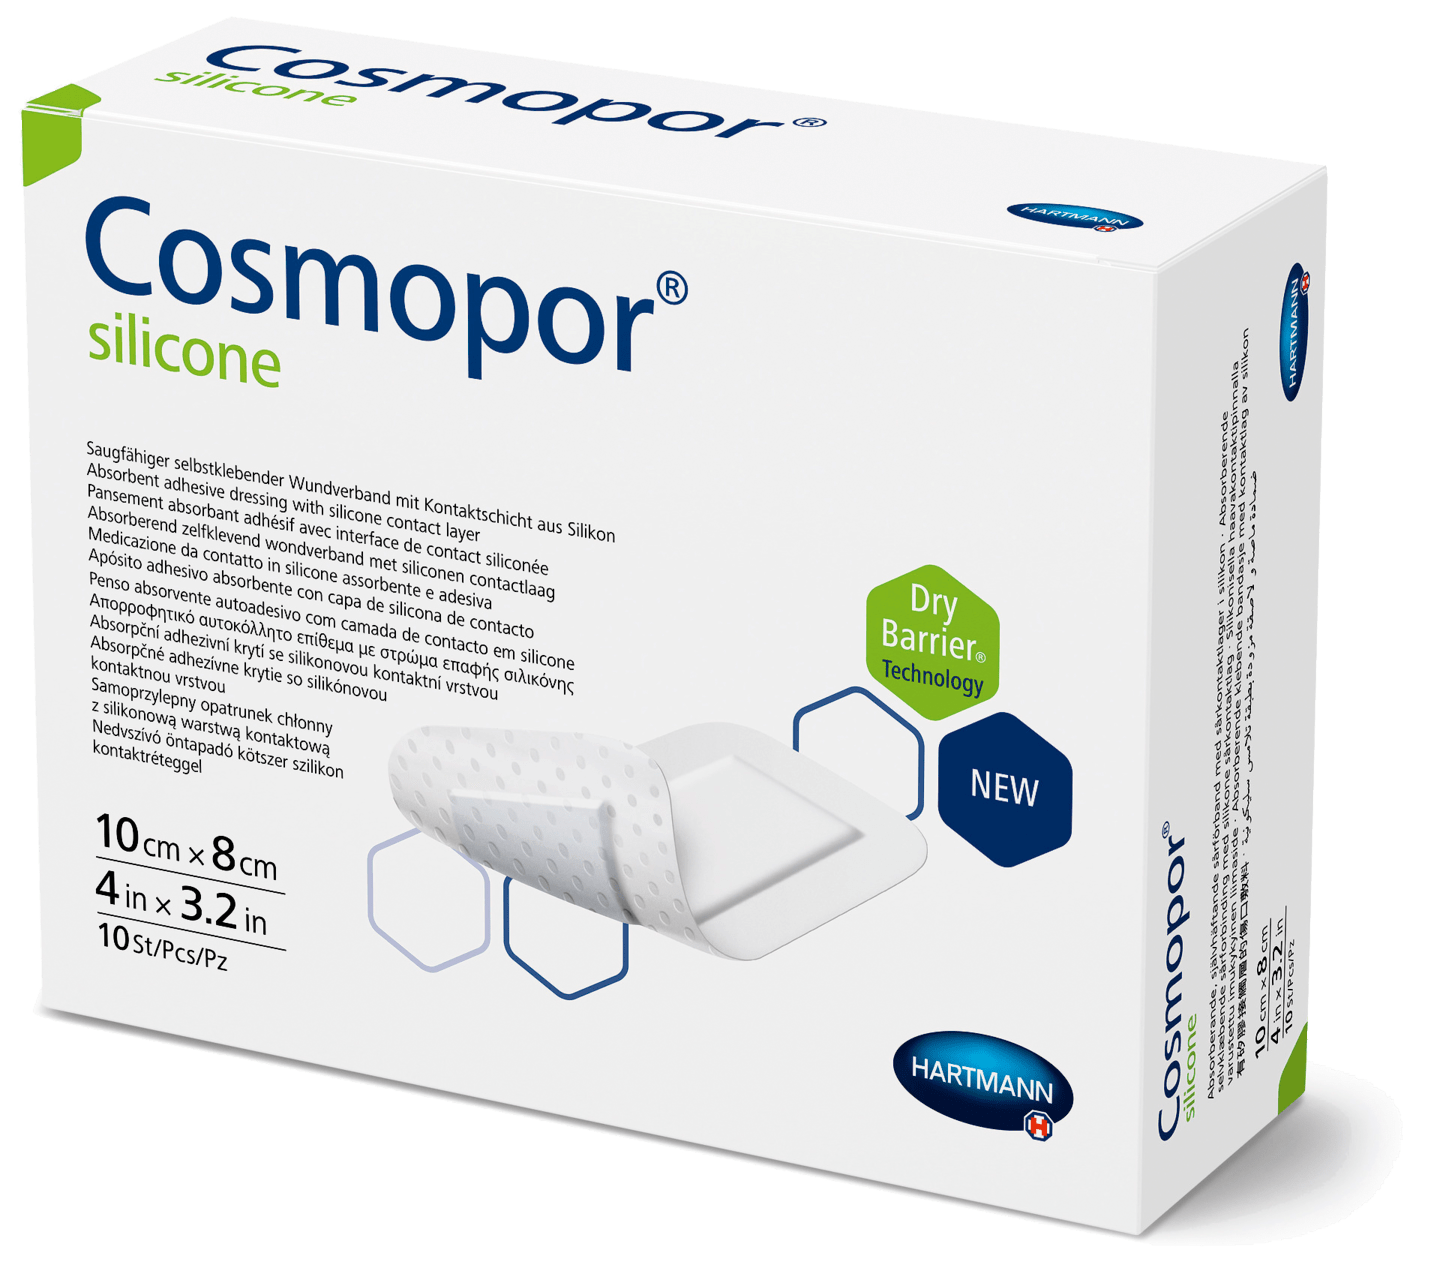 Hartmann - Cosmopor silicone